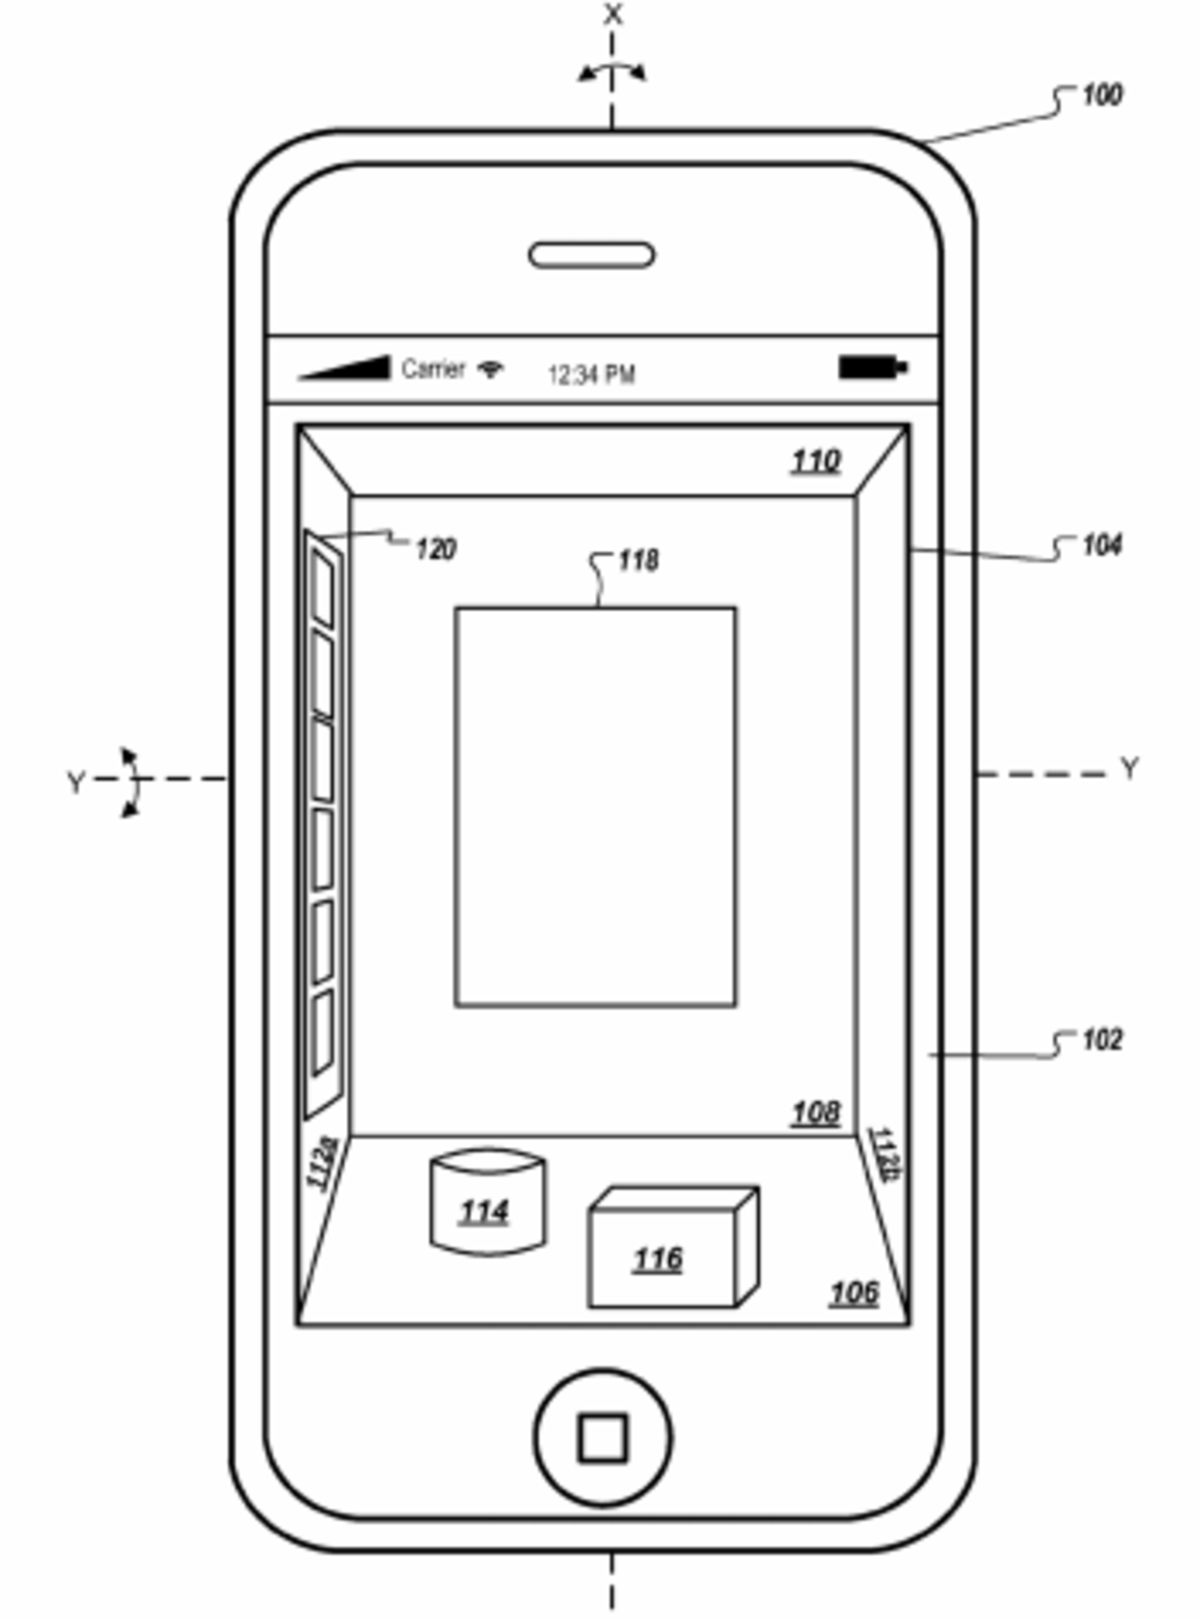 patente-interfaz-3d-iphone-2